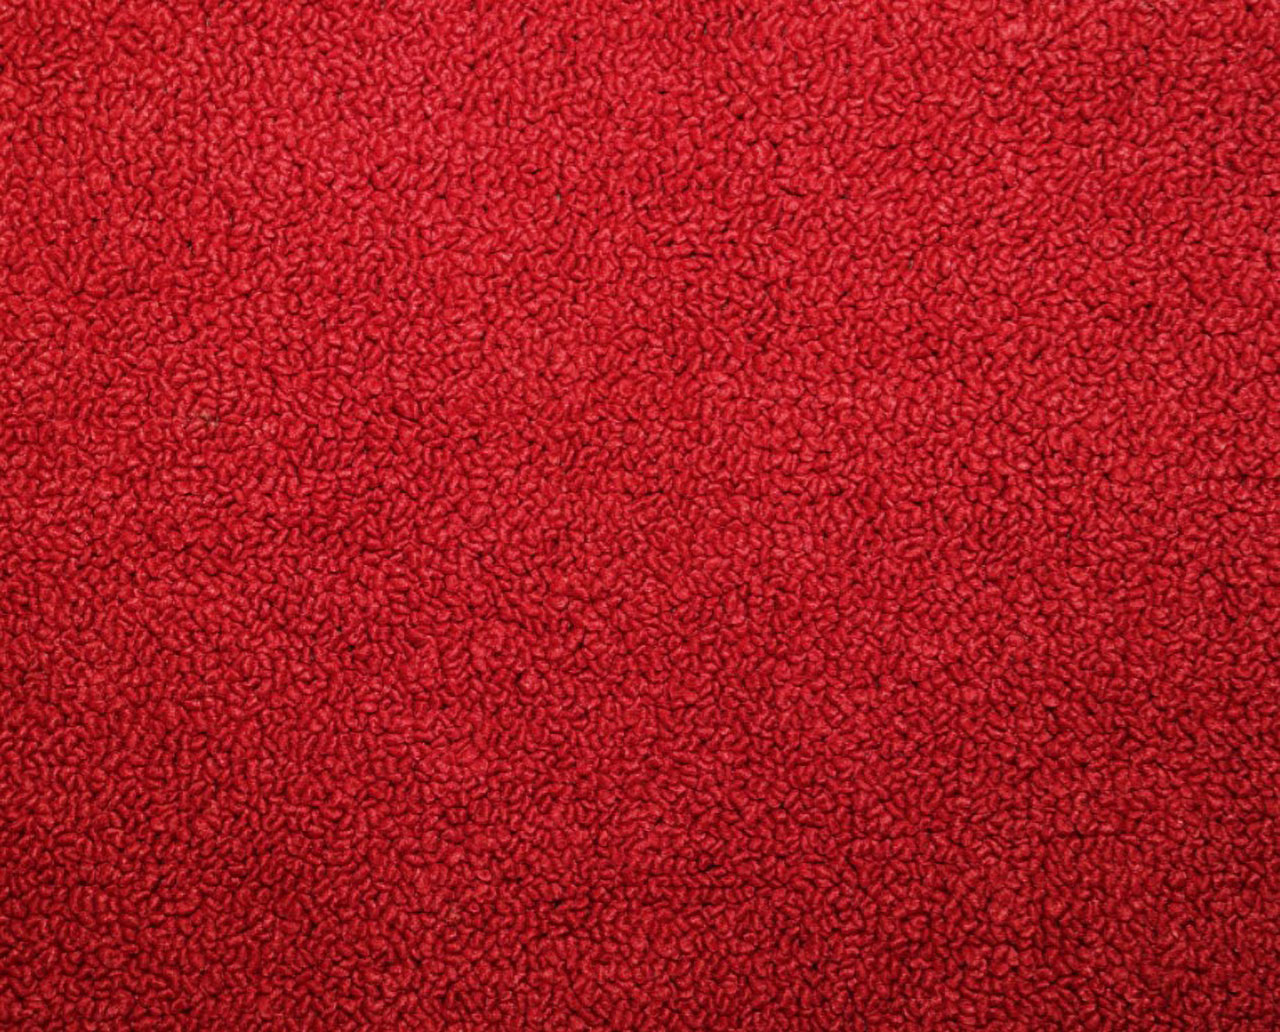 Holden Kingswood HQ Kingswood Ute Jan71-Sept72 12E Calypso Red Carpet (Image 1 of 1)